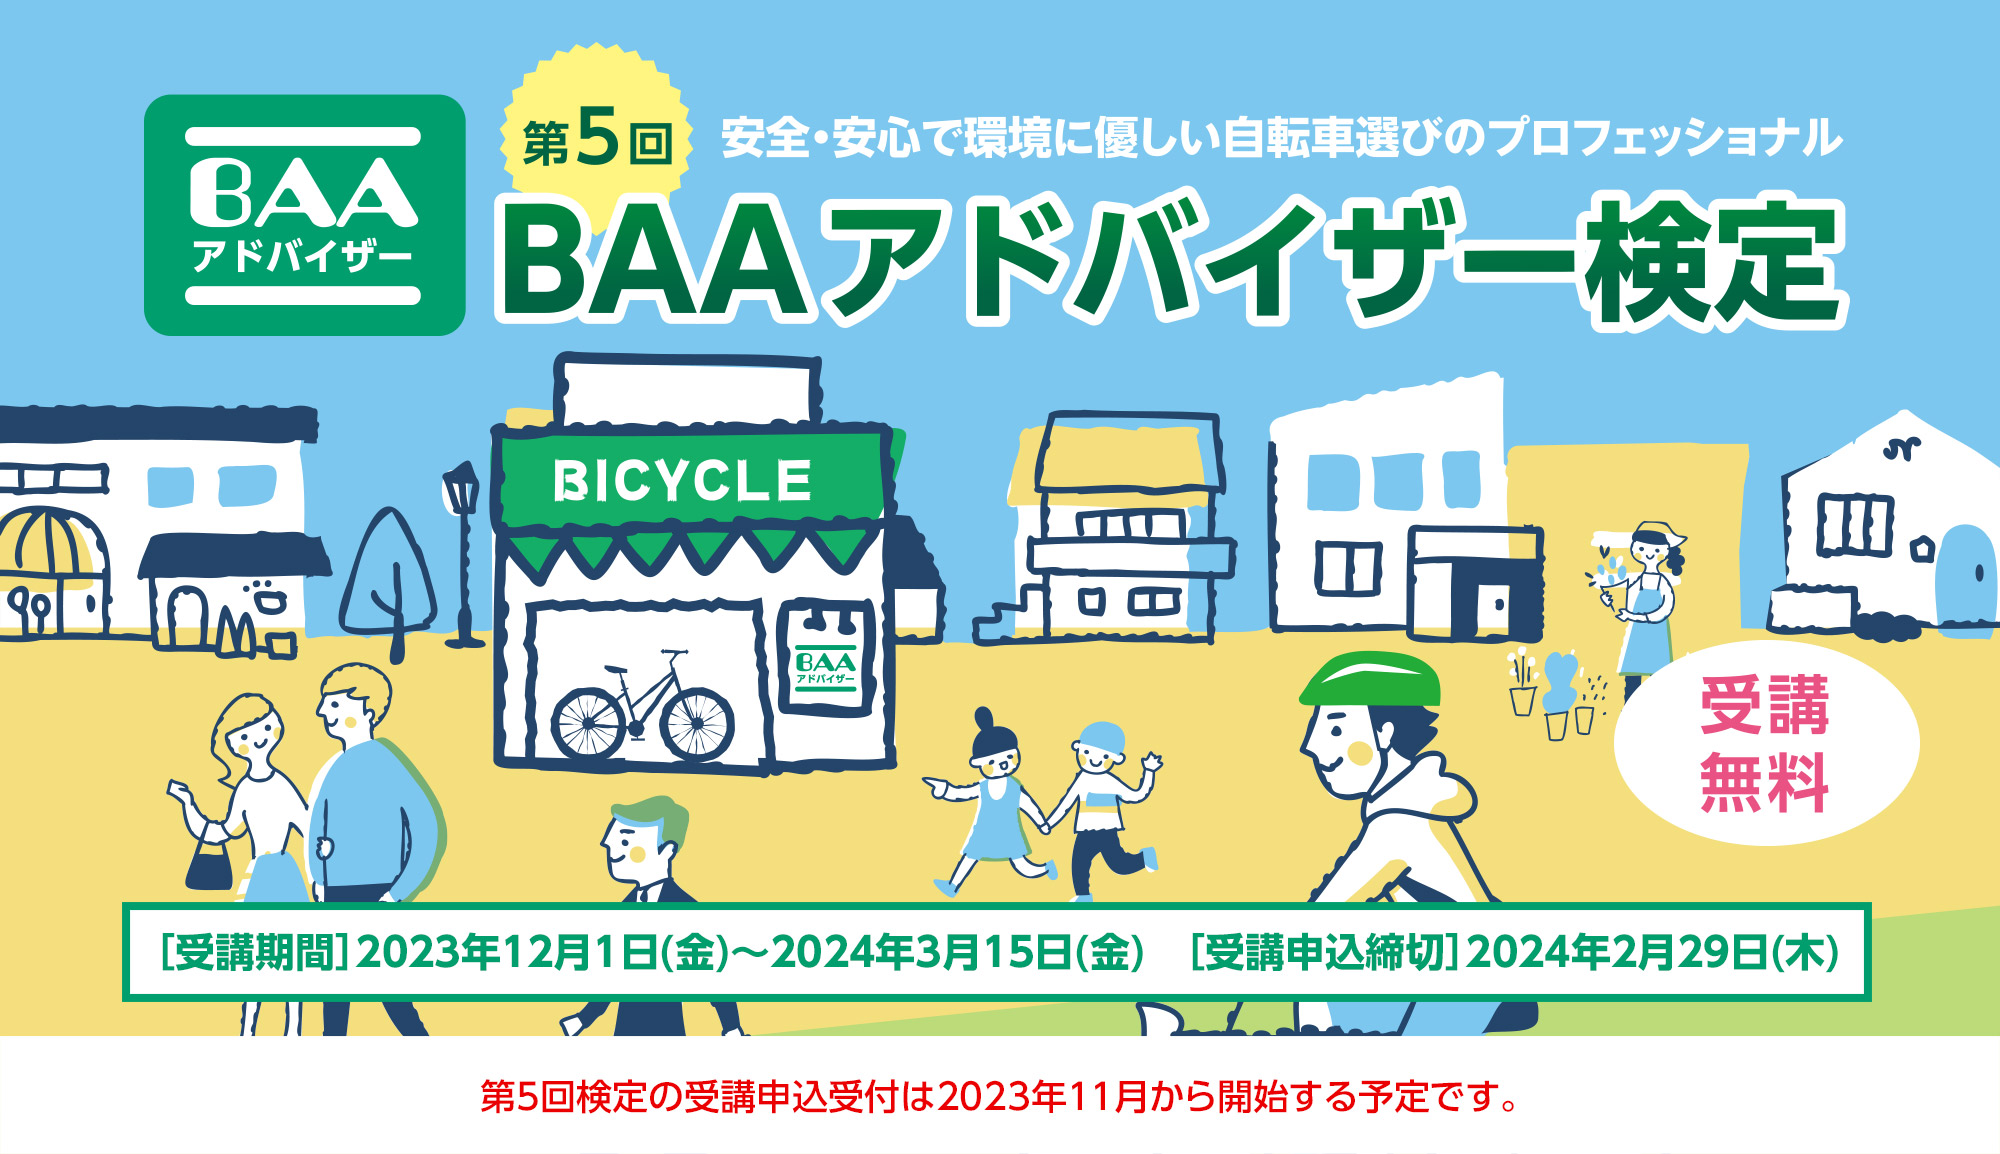 安全・安心な自転車をお客様に提供するために第5回BAAアドバイザー検定を実施します!